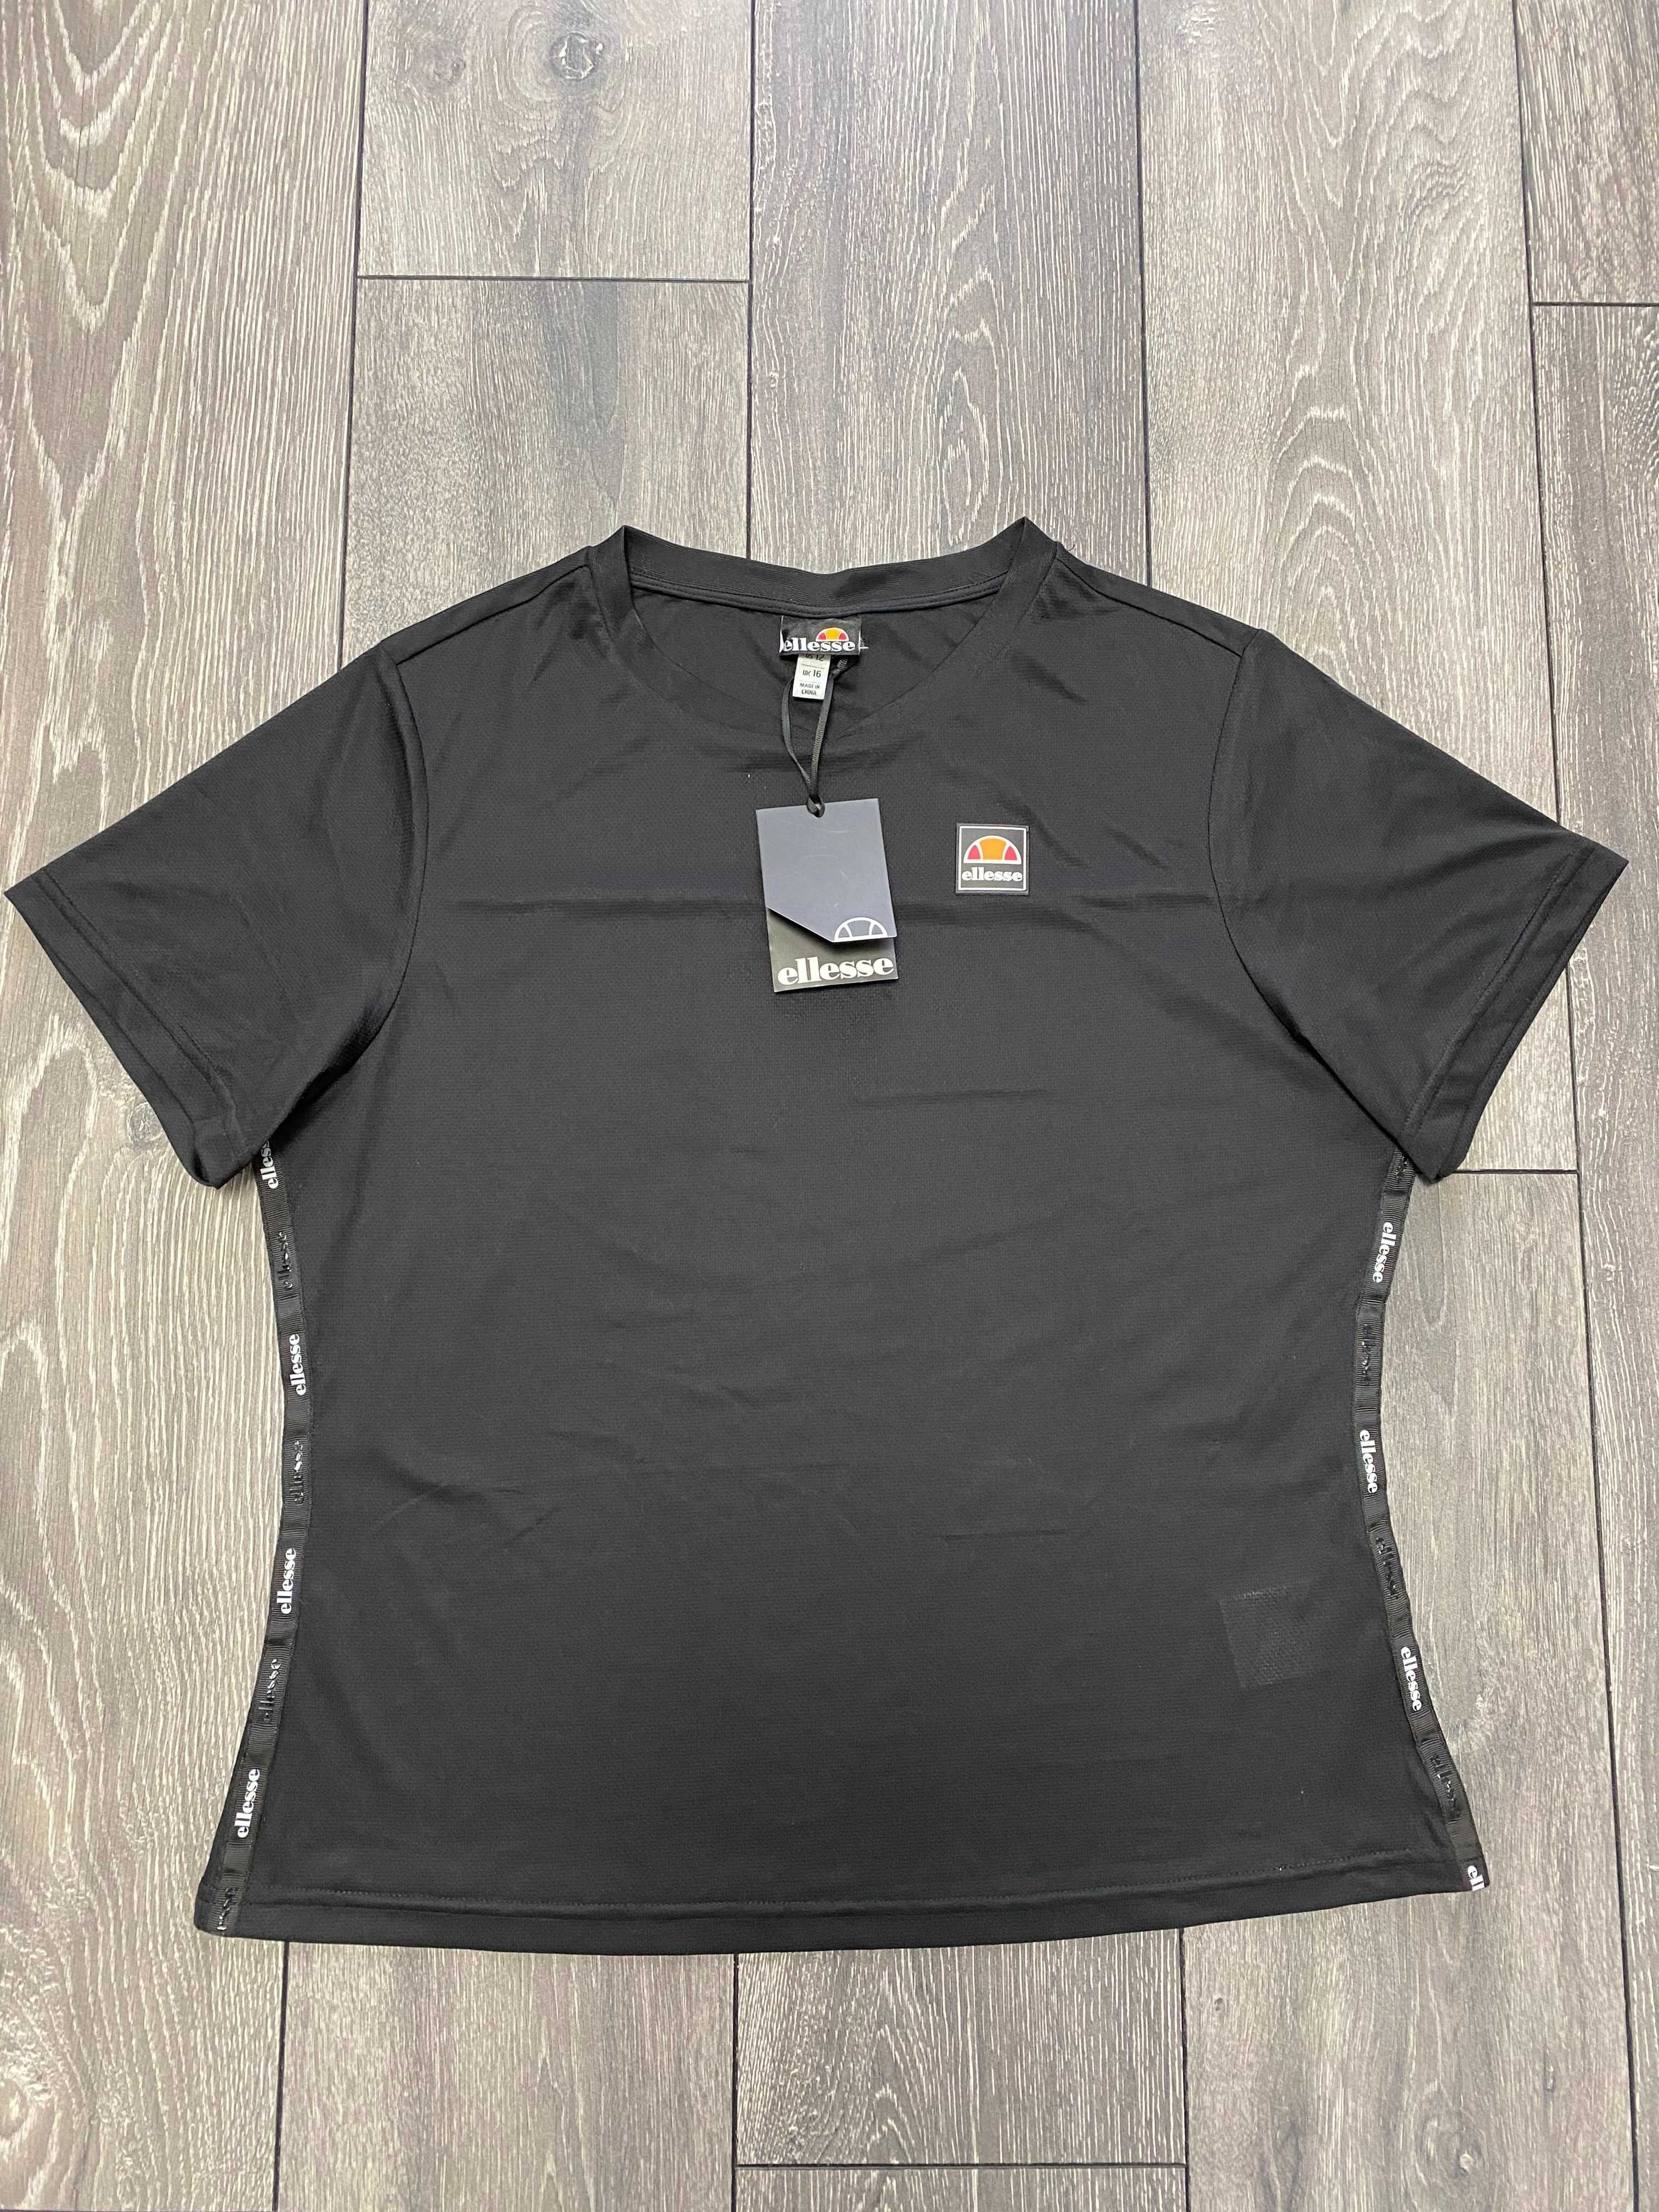 Женская футболка Ellesse черный цвет оригинал новая! Новые коллекции!